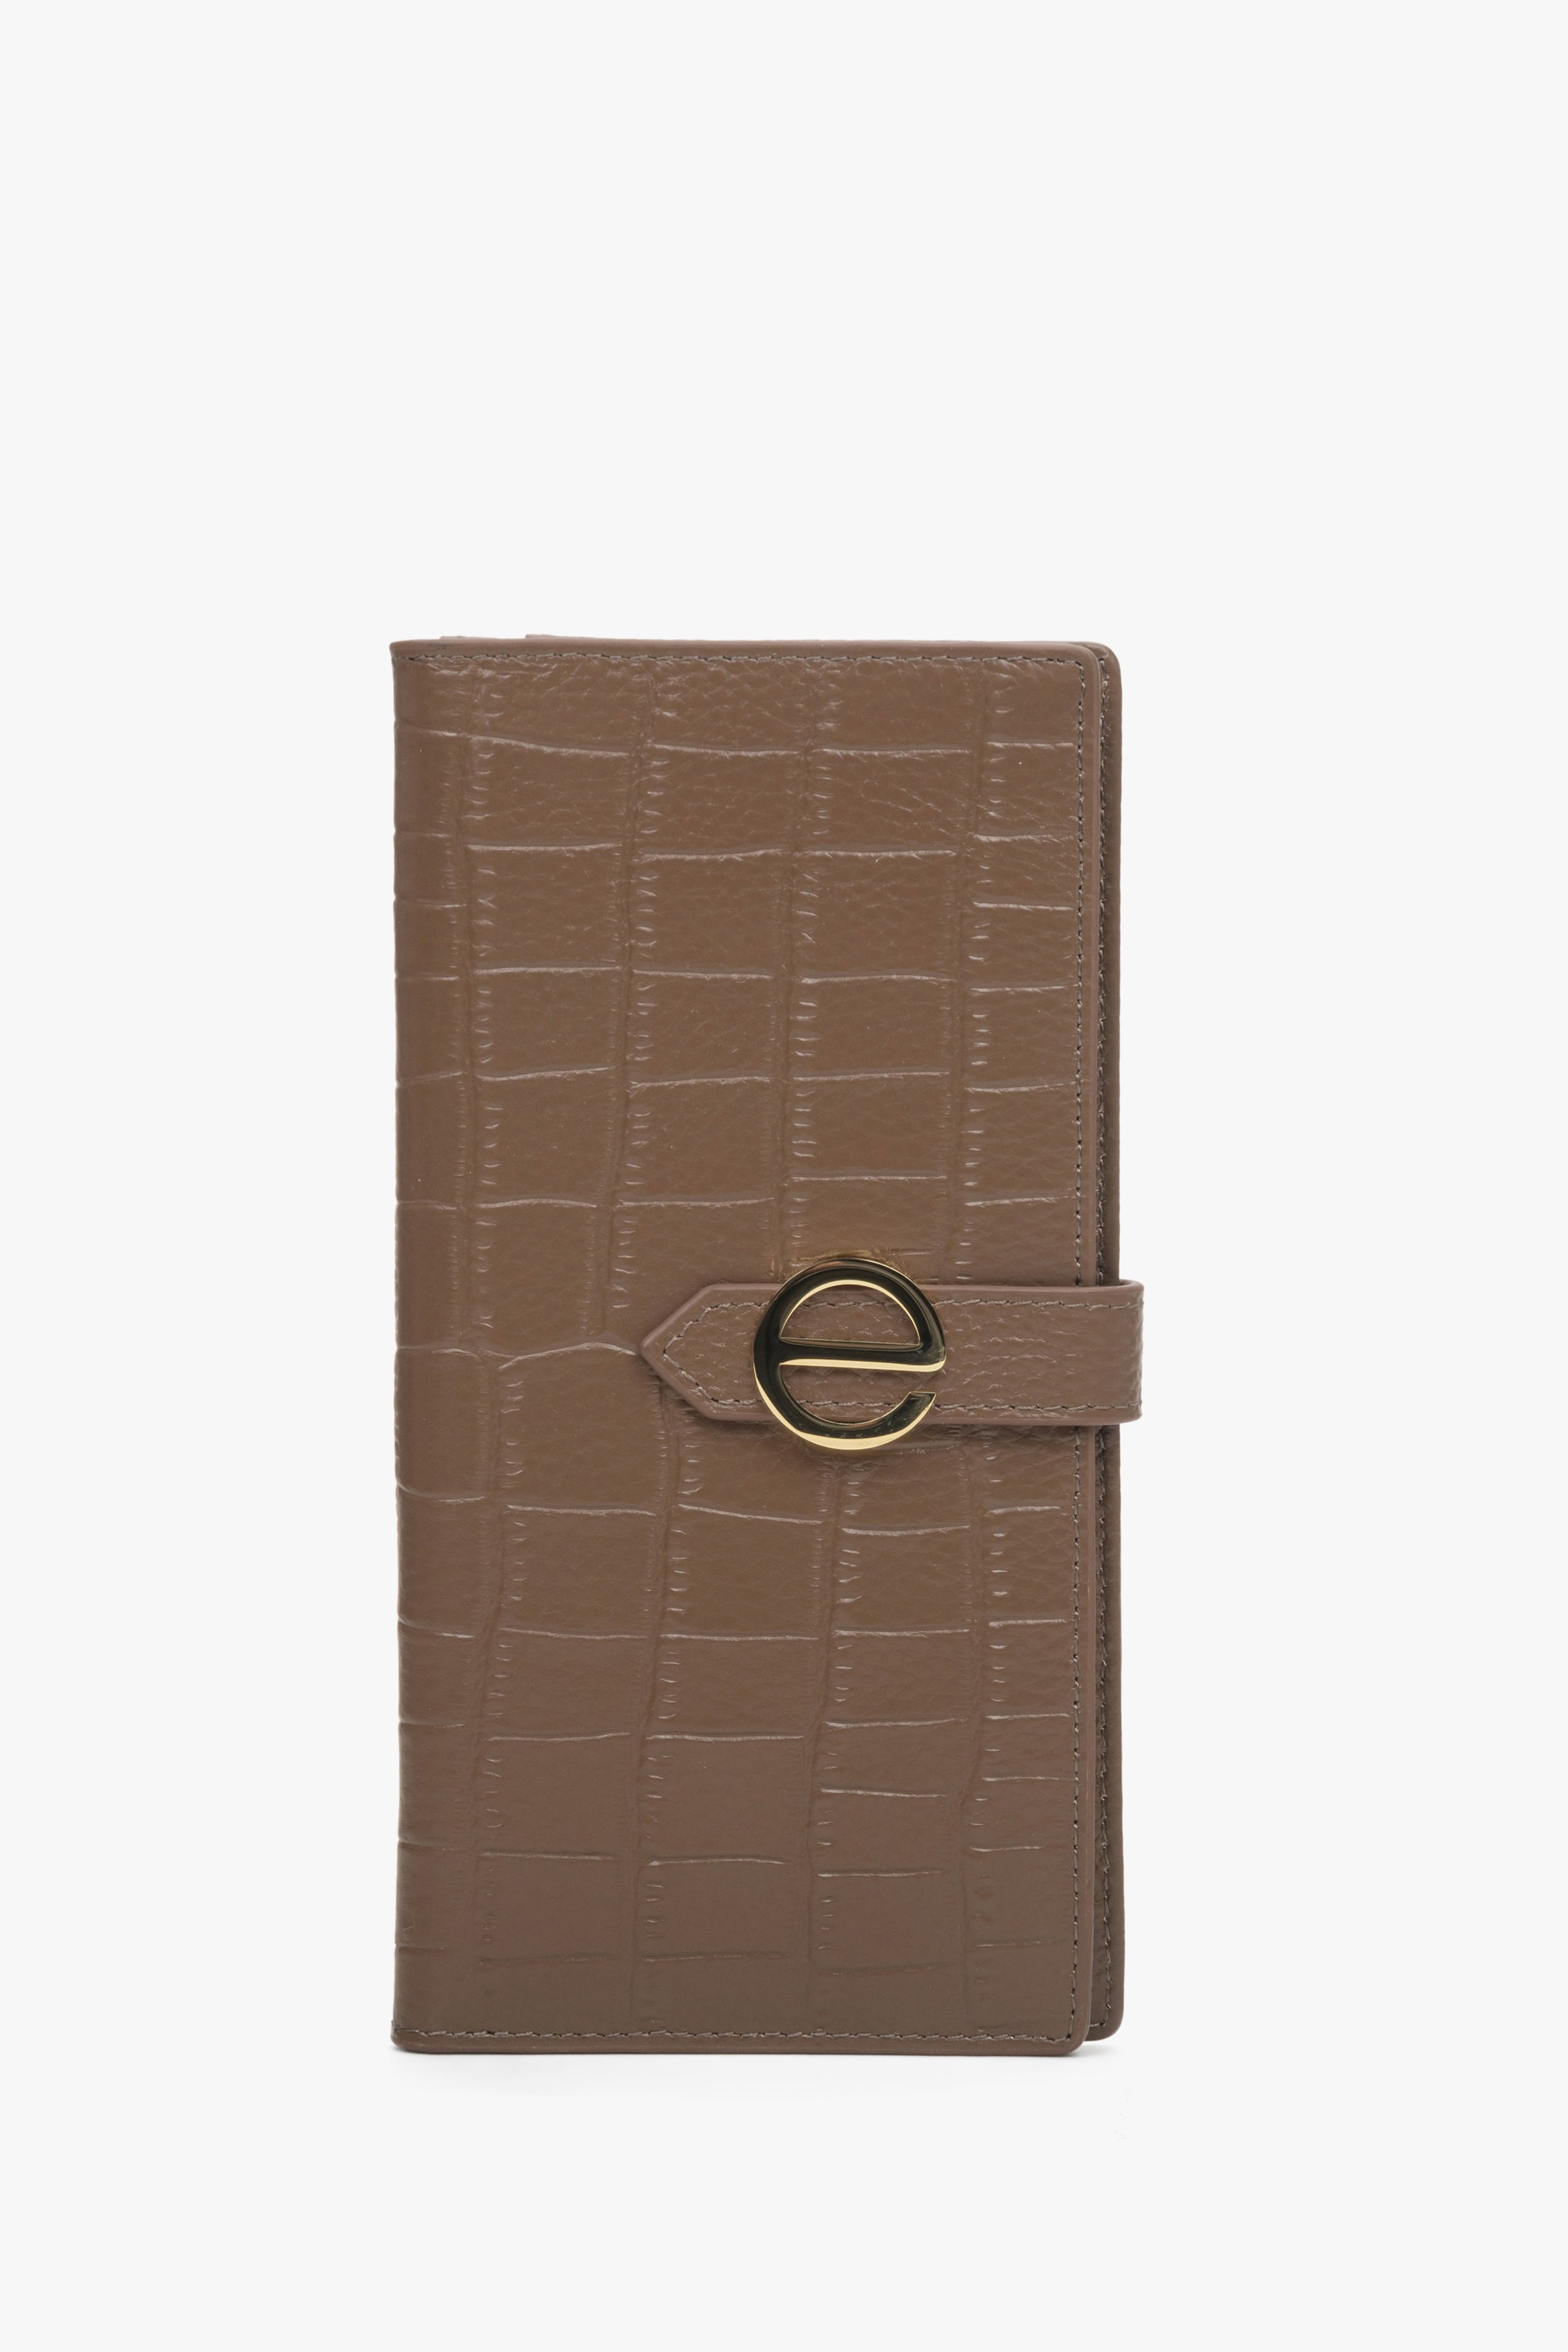 Estro: Duży brązowy portfel damski z tłoczonej skóry naturalnej ze złotymi detalami